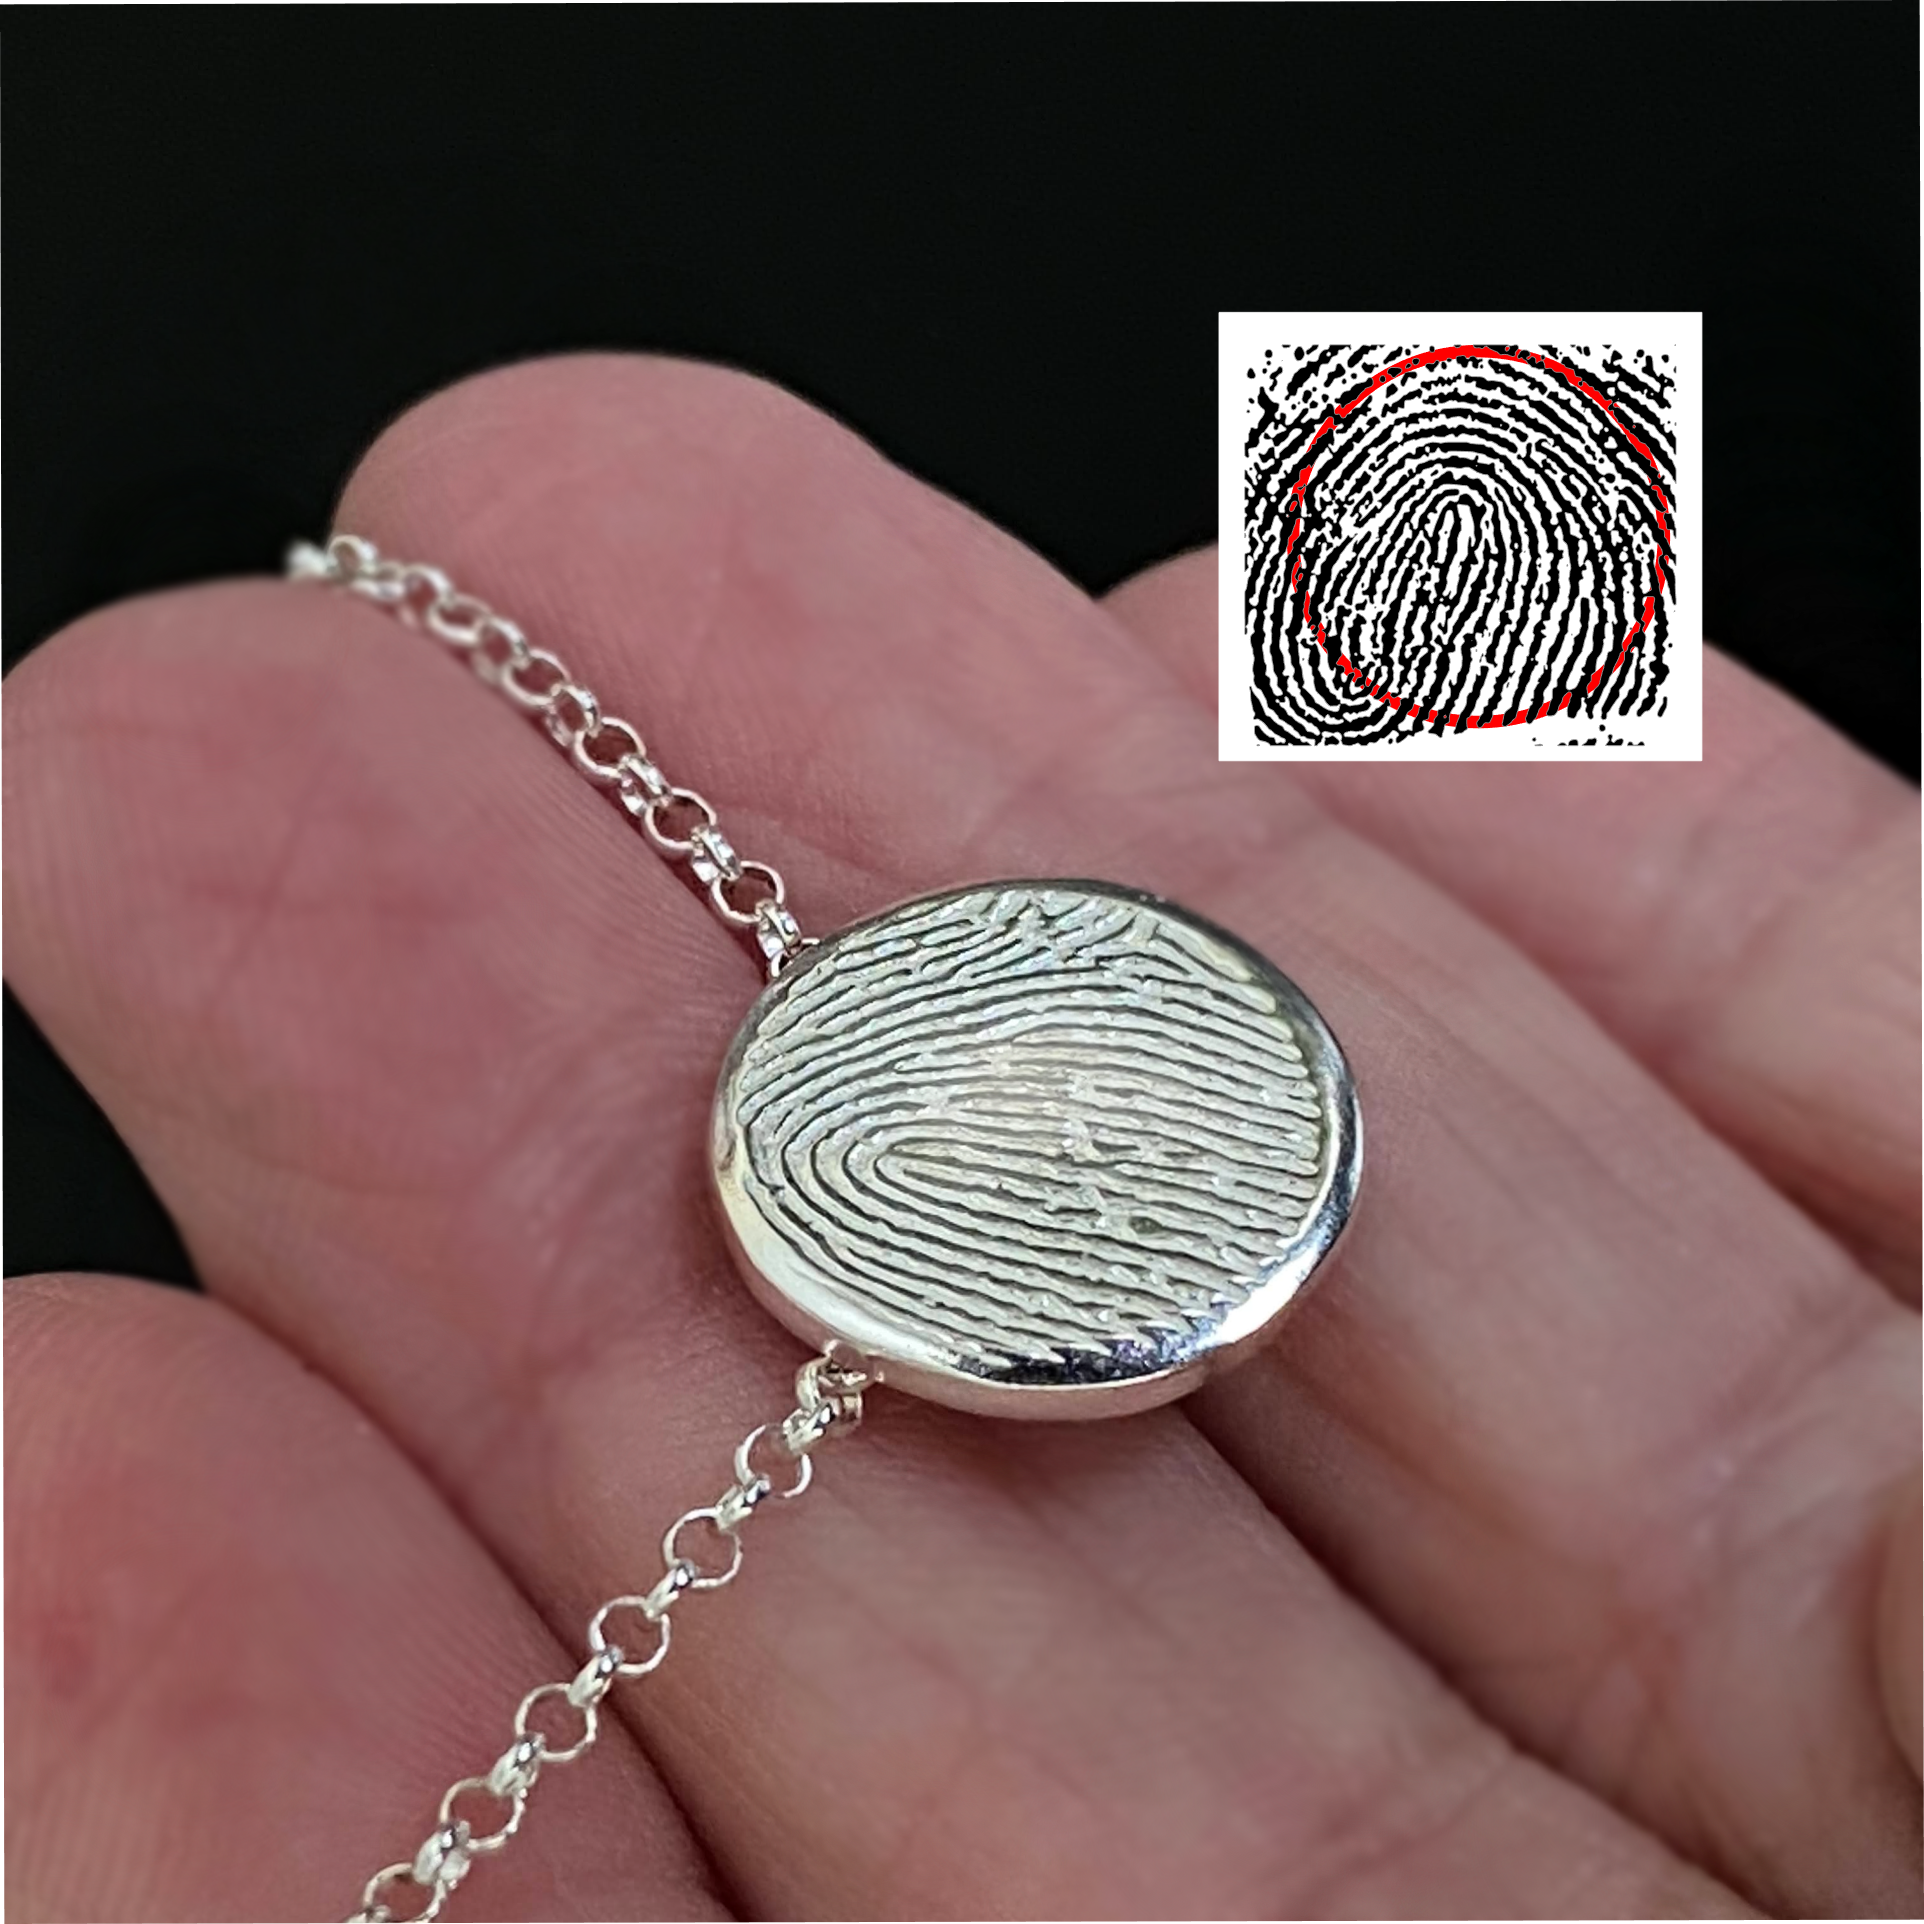 digital fingerprint made into sterling silver fingerprint necklace